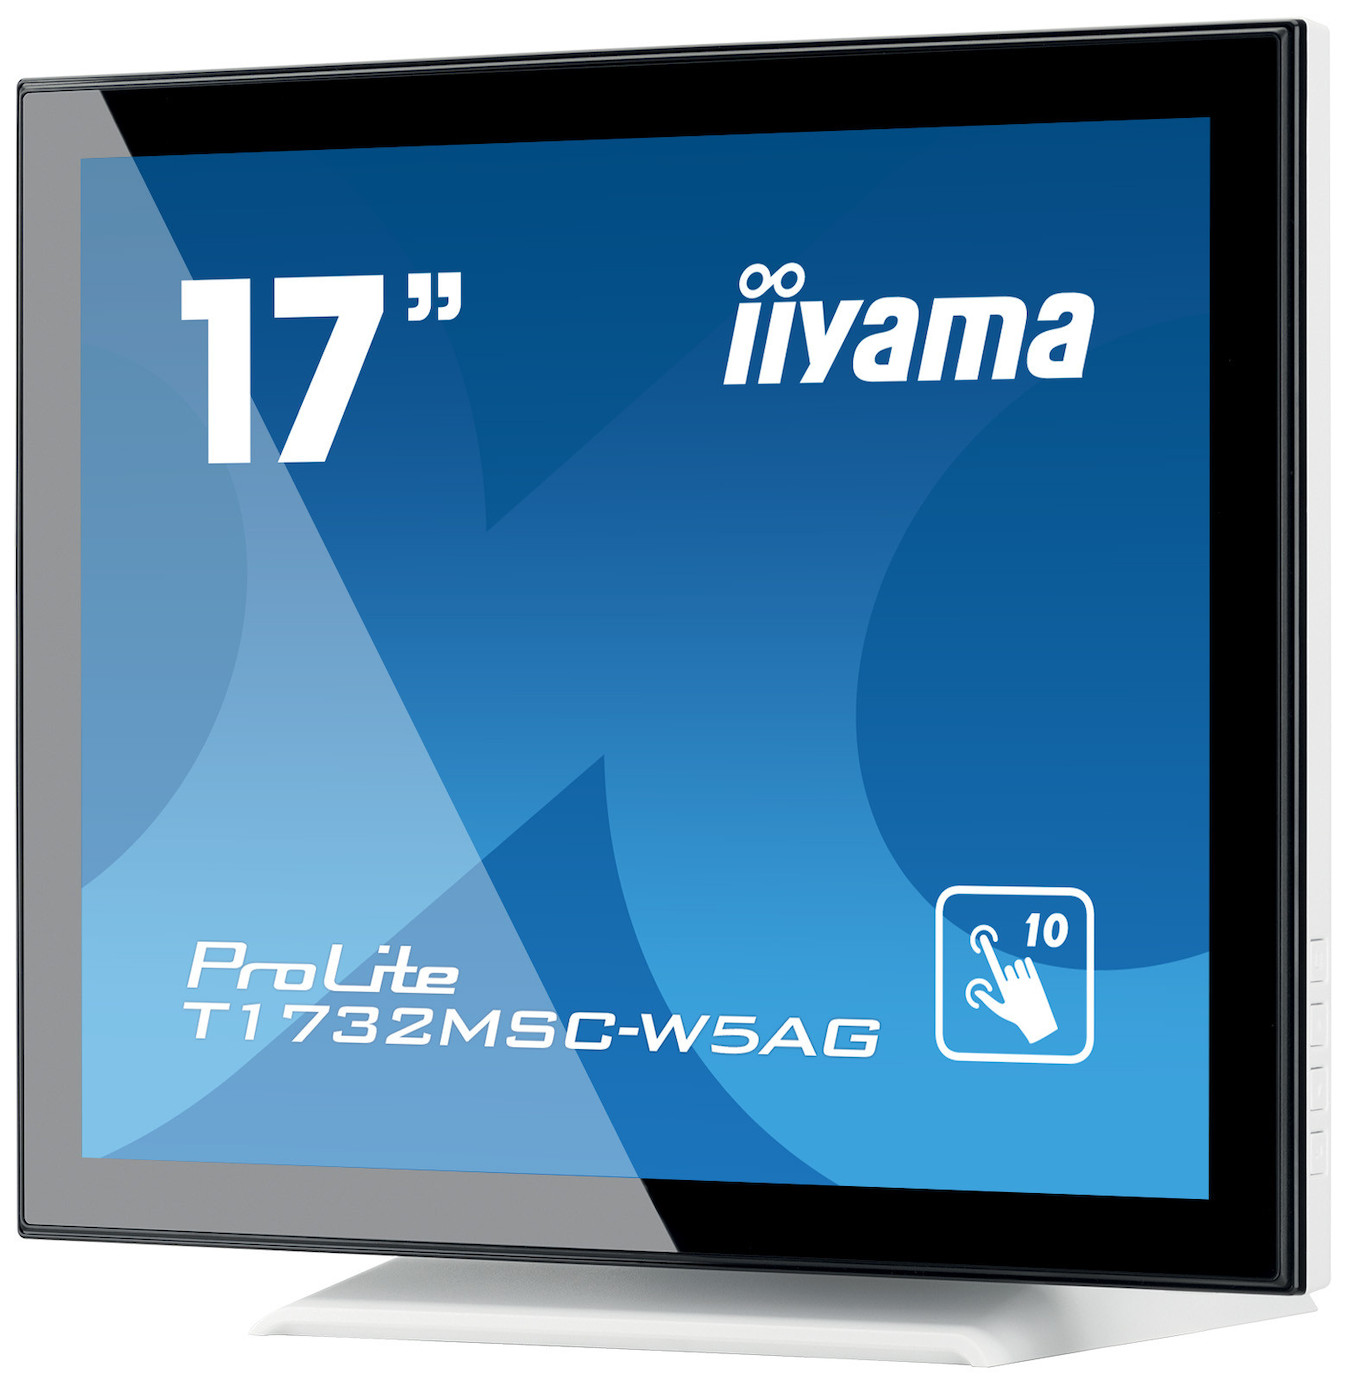 Vorschau: iiyama Prolite T1732MSC-W5AG 17" LCD Monitor mit SXGA und 5ms